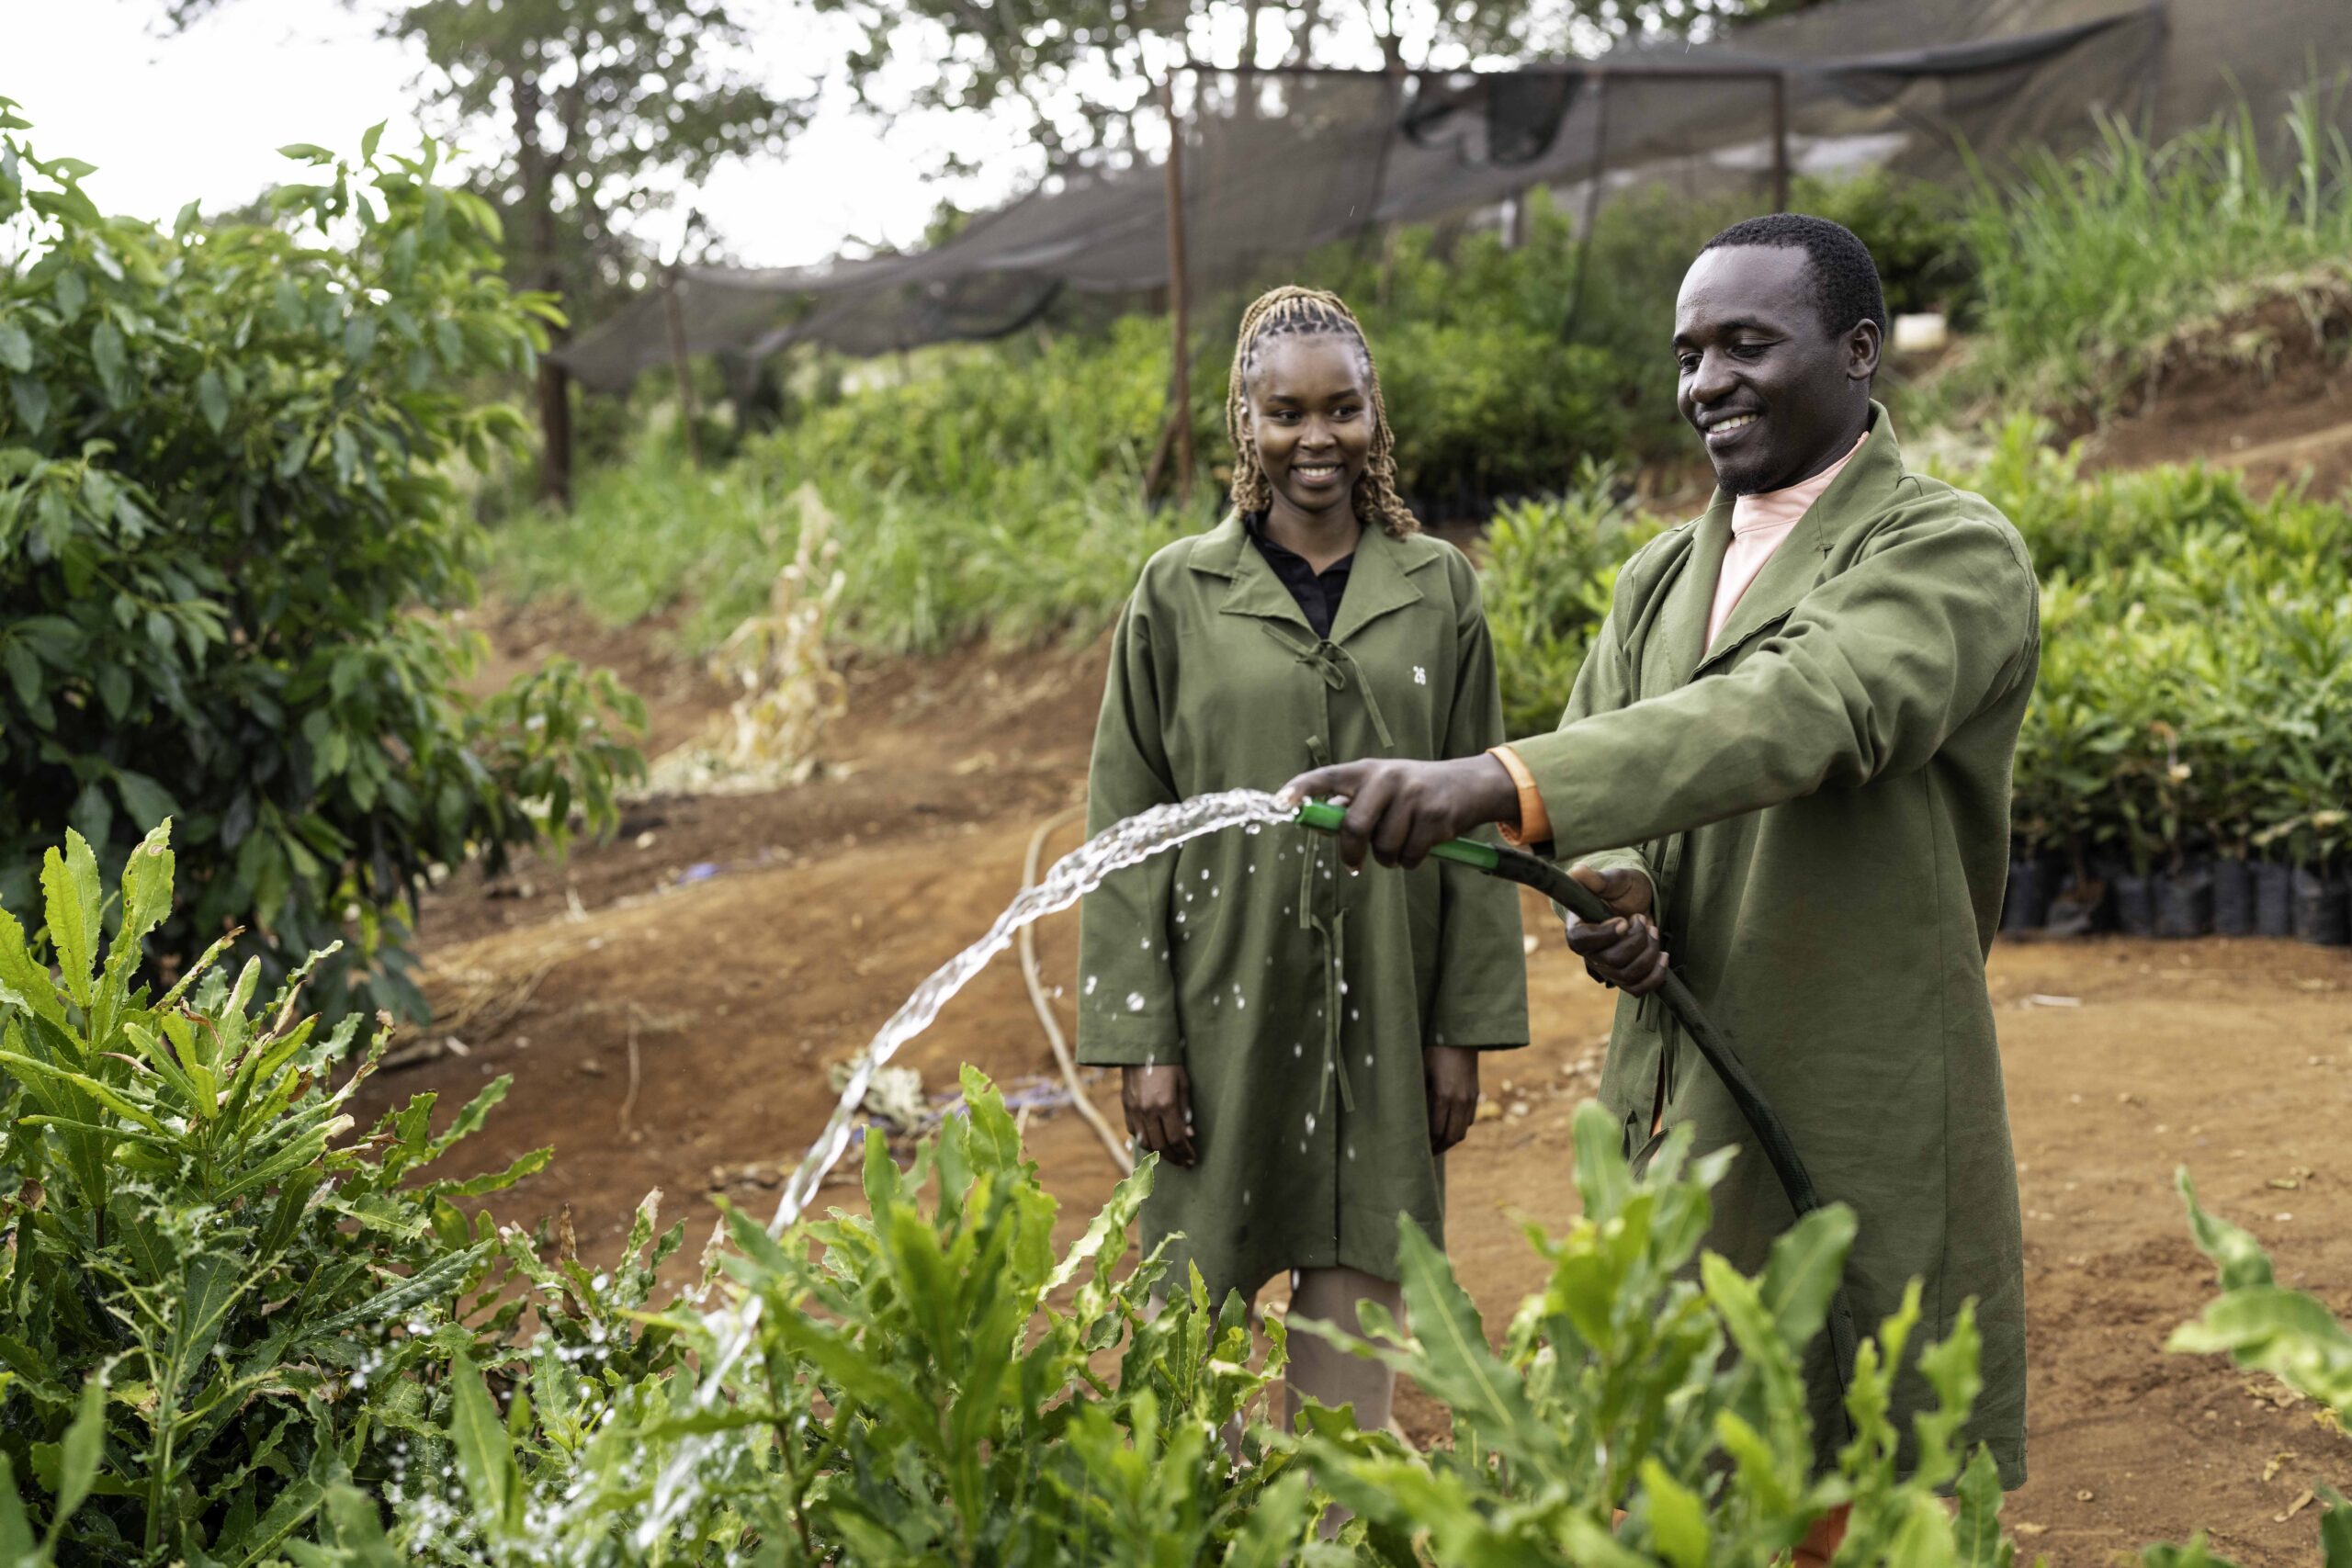 Los pasantes de agronomía Purity Kimathi y Jeremiah Nyaga utilizan el agua de lluvia recogida para regar las plantas del vivero de Jumbo Nuts Limited, empresa procesadora de macadamia y cliente de Root Capital en Kenia. Fotografía: Adam Finch/Root Capital. 